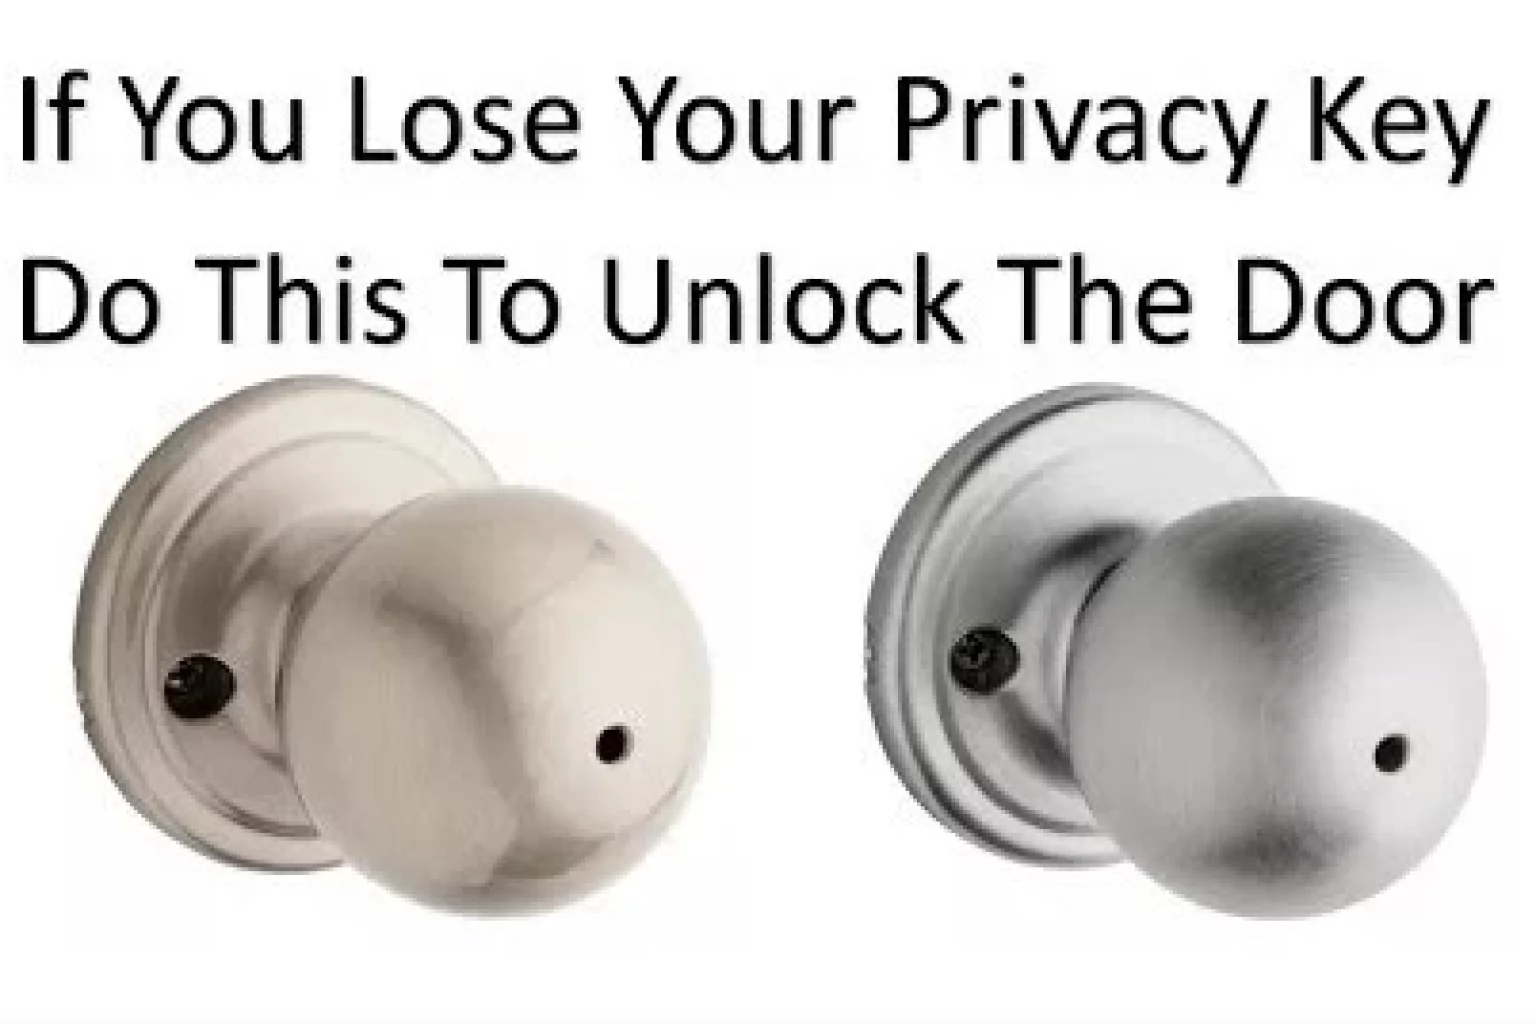 How to unlock a bathroom door